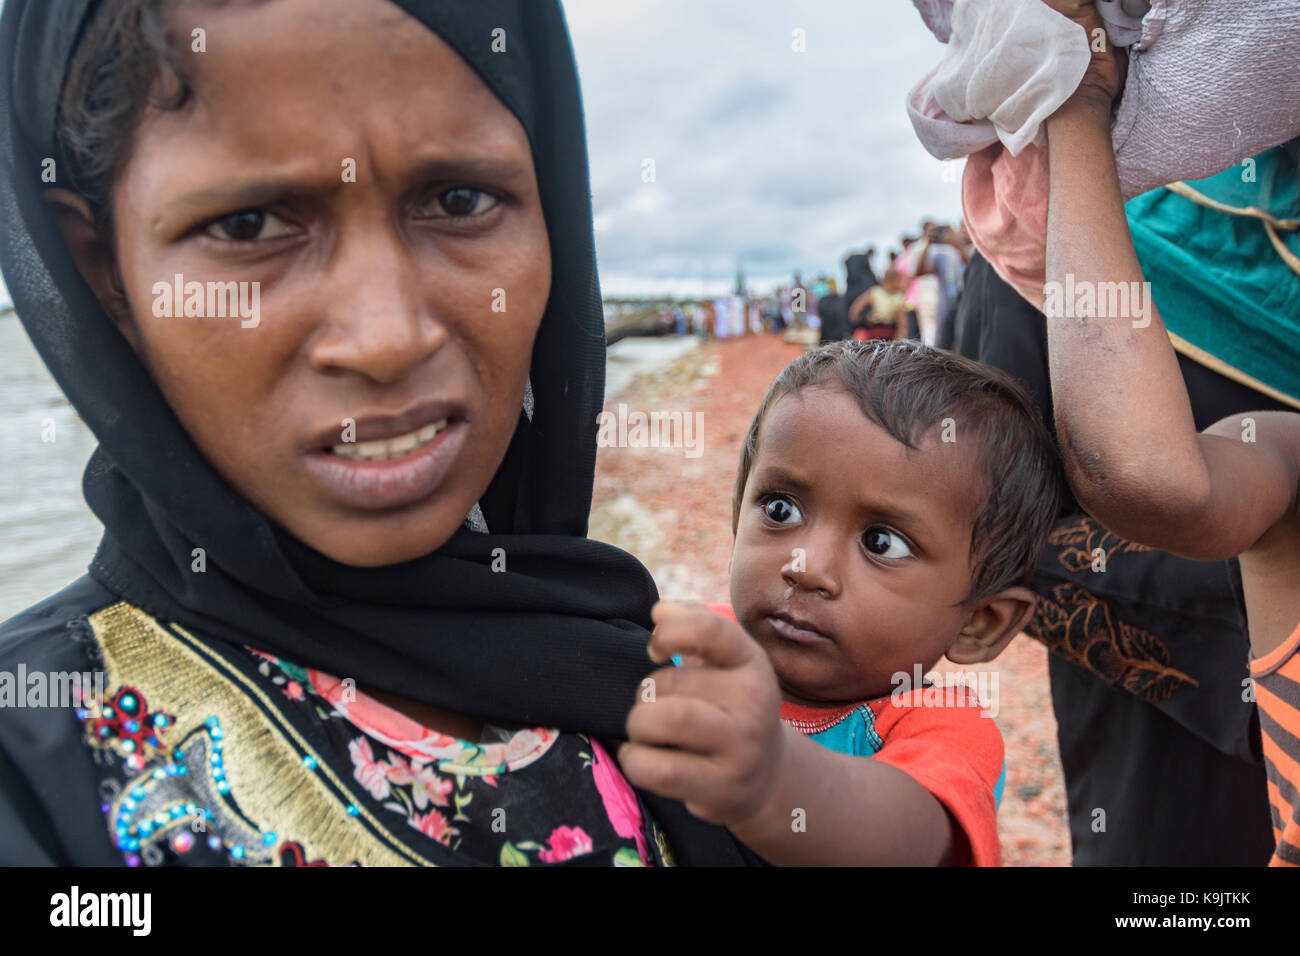 Rohingya refugees in Bangladesh Stock Photo